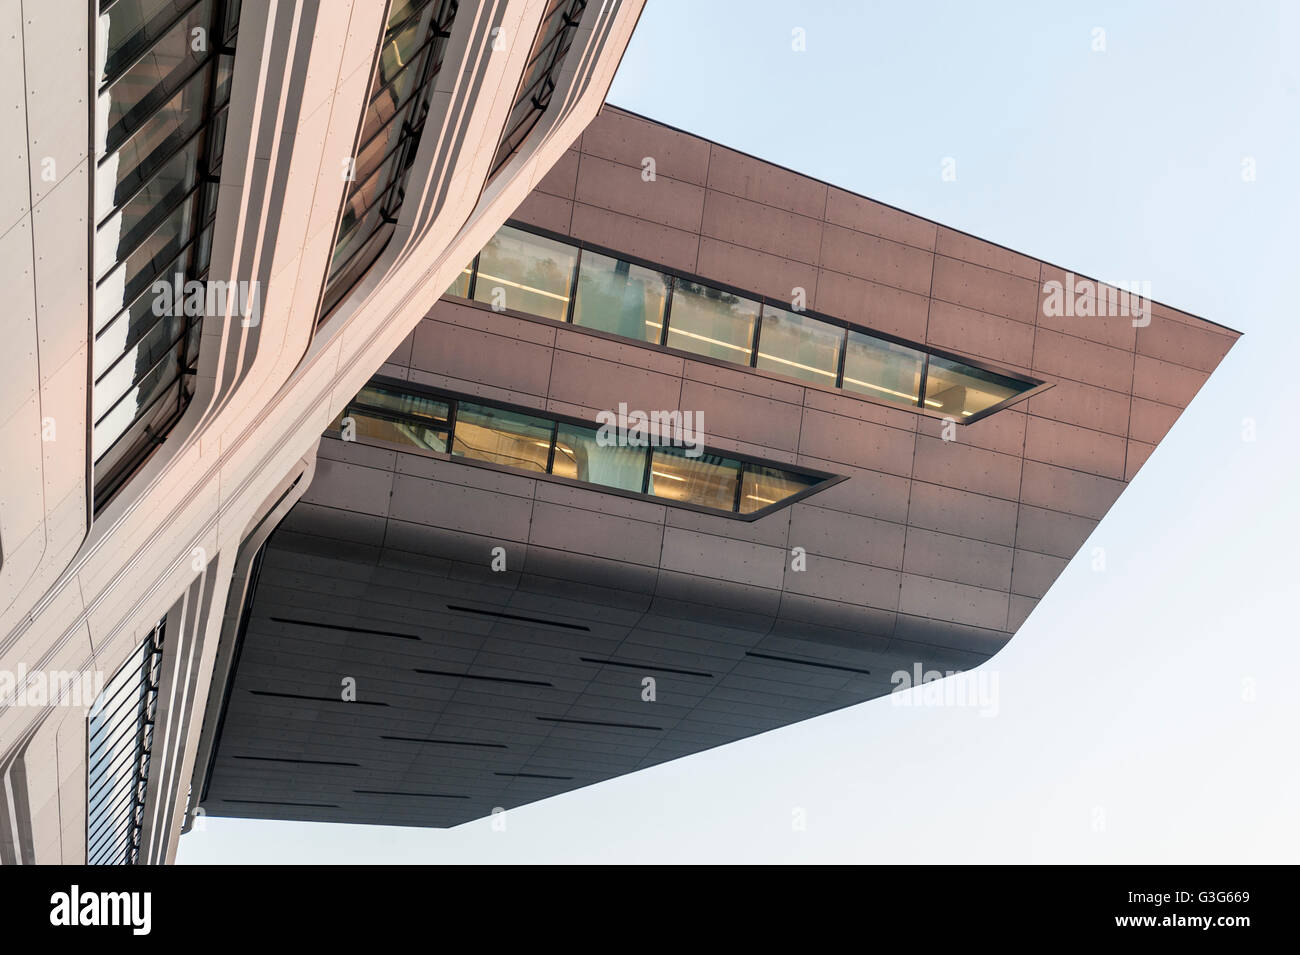 Biblioteca e centro di apprendimento dell'Università di Economia Vienna, Austria, Europa, architettura progettata dall'architetto Zaha Hadid. Dettaglio dell'edificio. Foto Stock